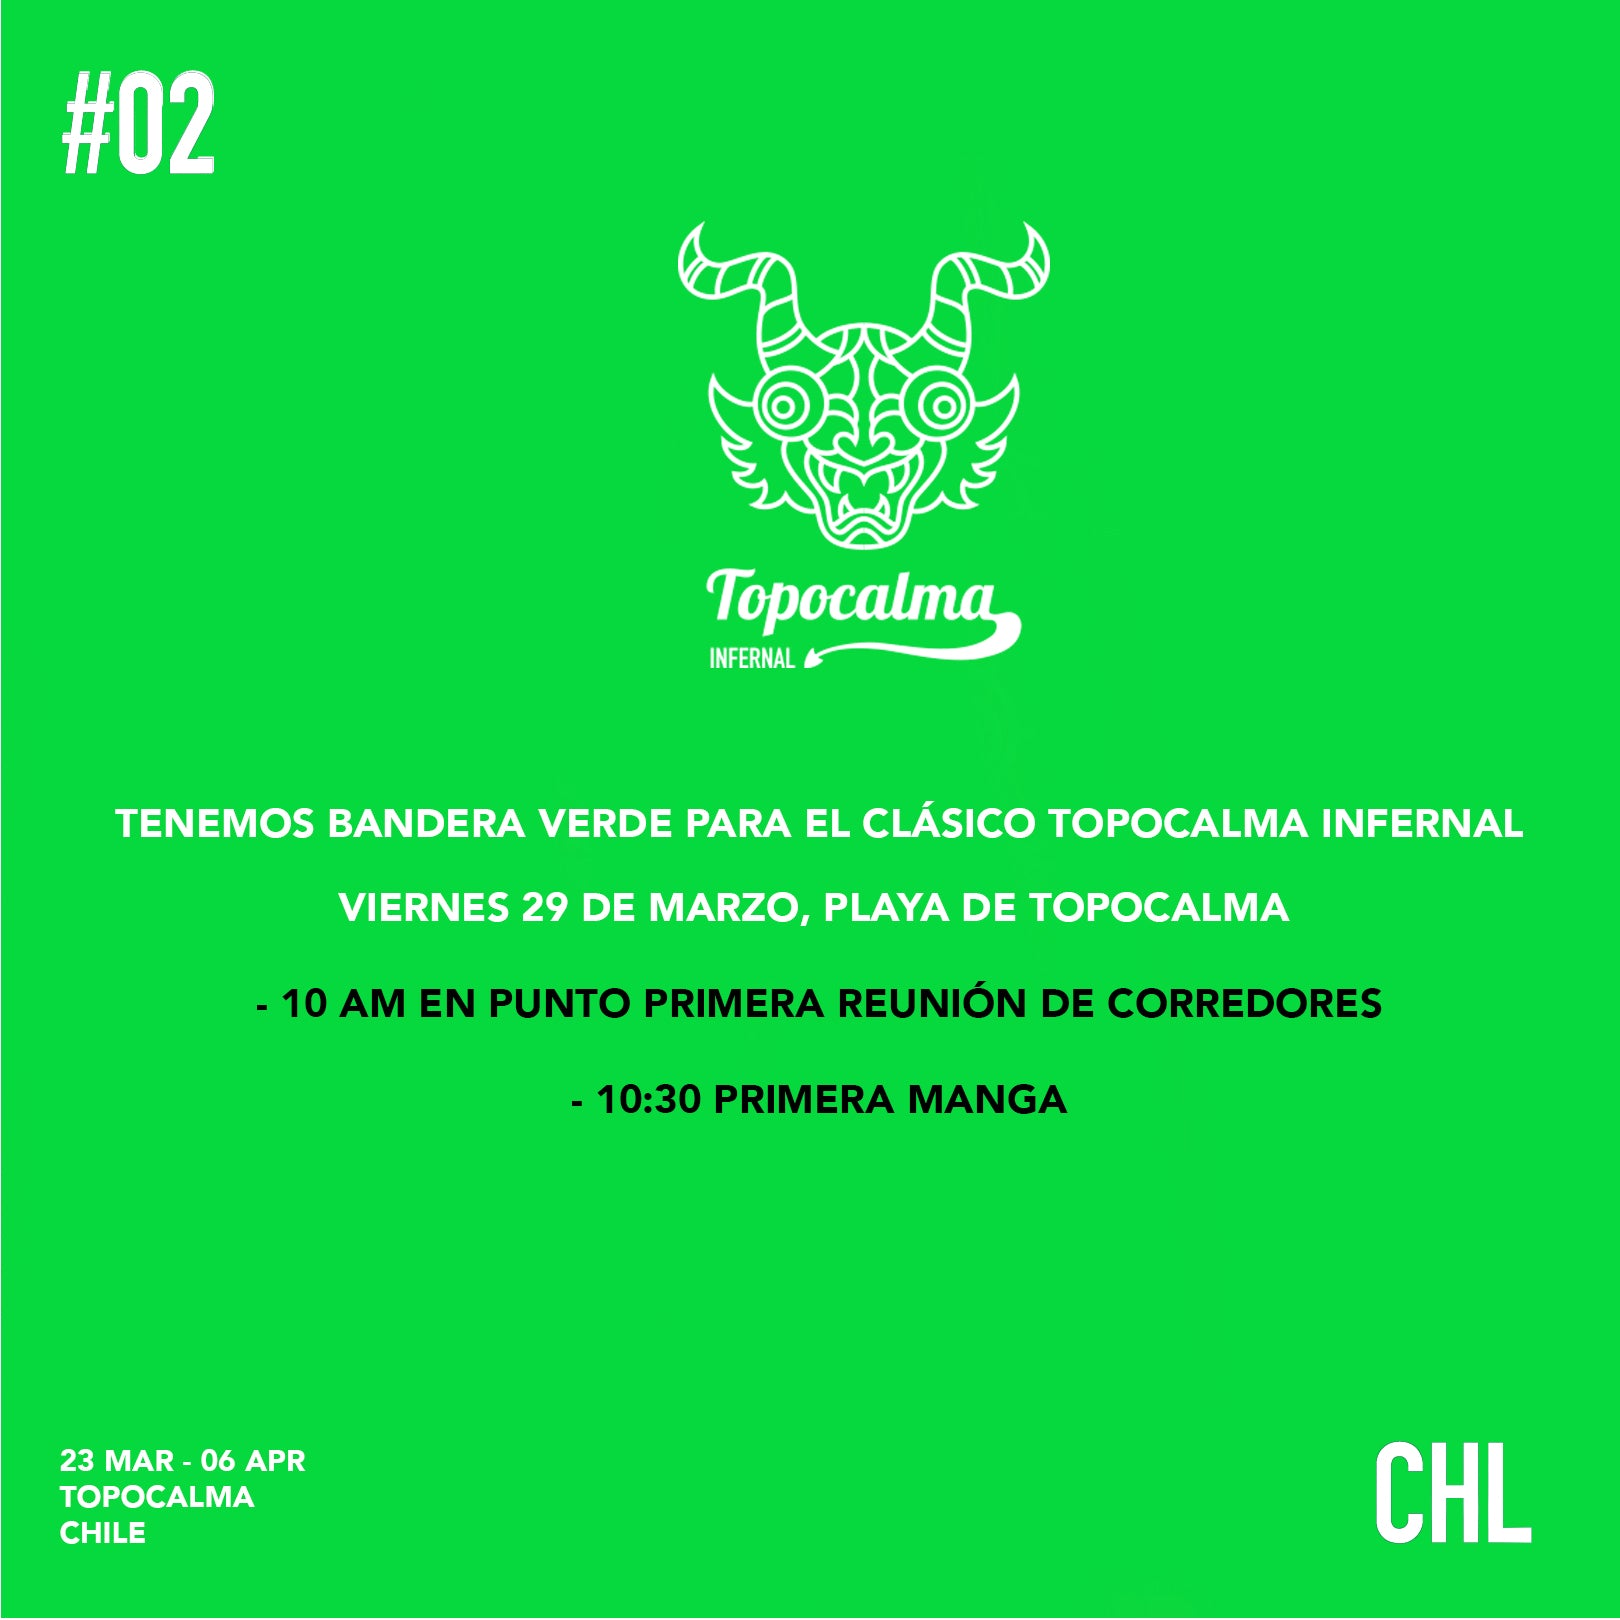 Topocalma Infernal, Con bandera verde.